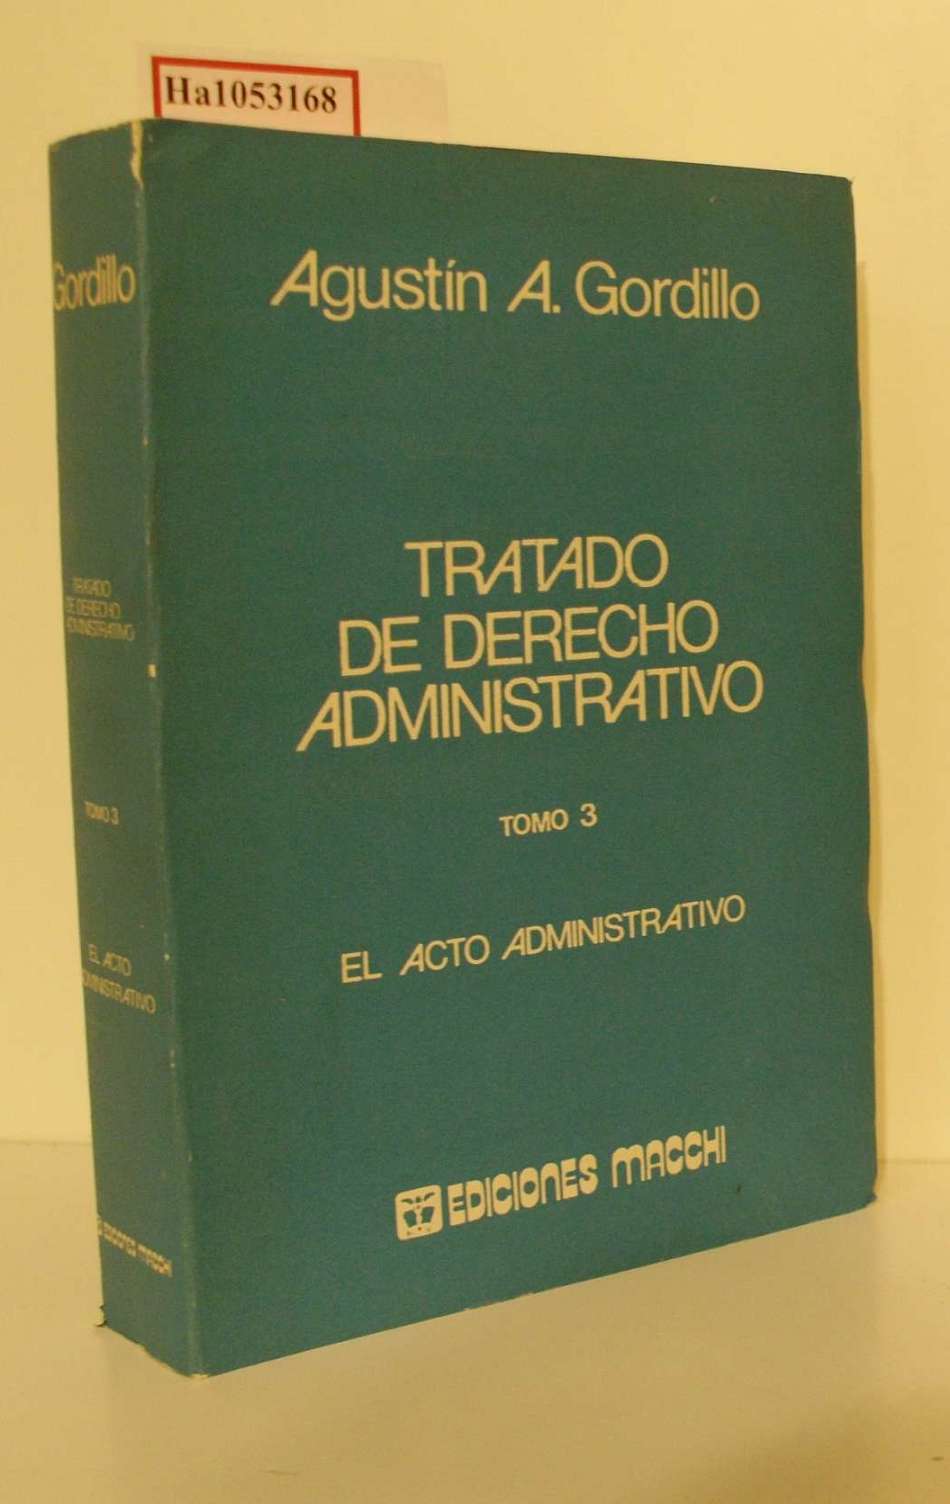 Tratado de Derecho Administrativo. Vol. 3. El Acto Administrativo. - Gordillo, Agustin A.